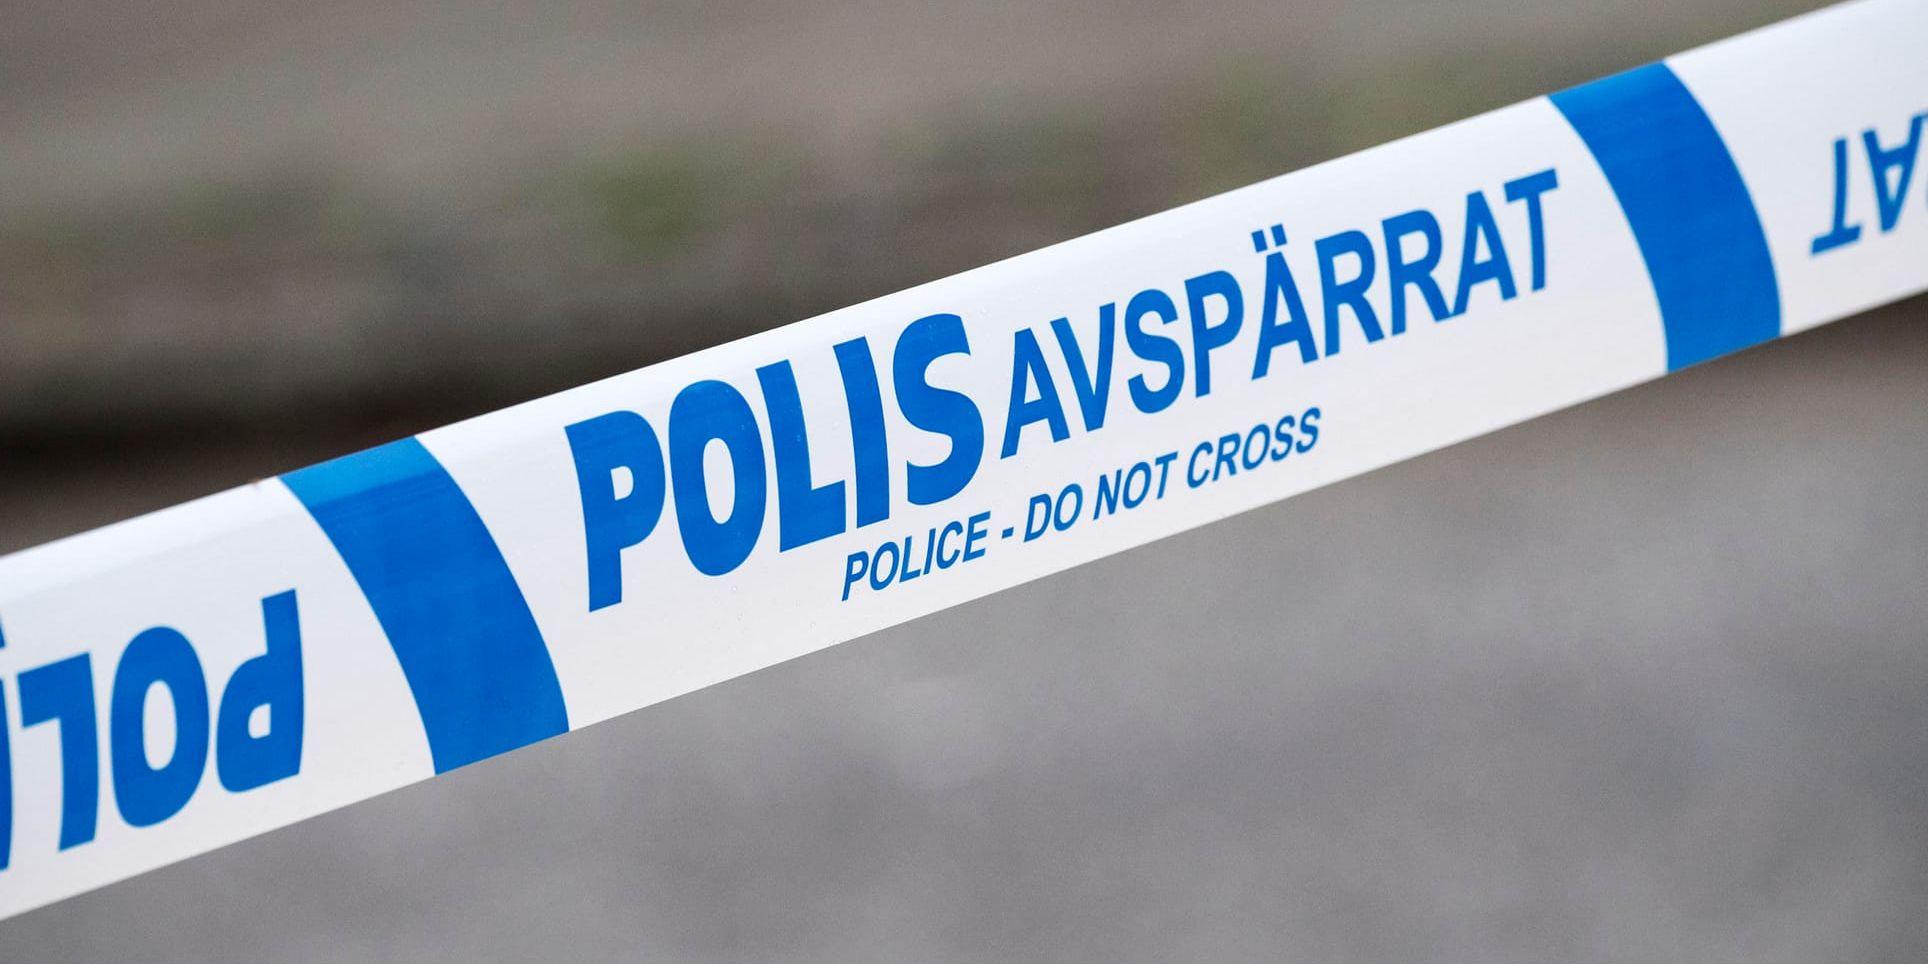 Polis utreder misstänkt mordförsök på Lidingö. Arkivbild.